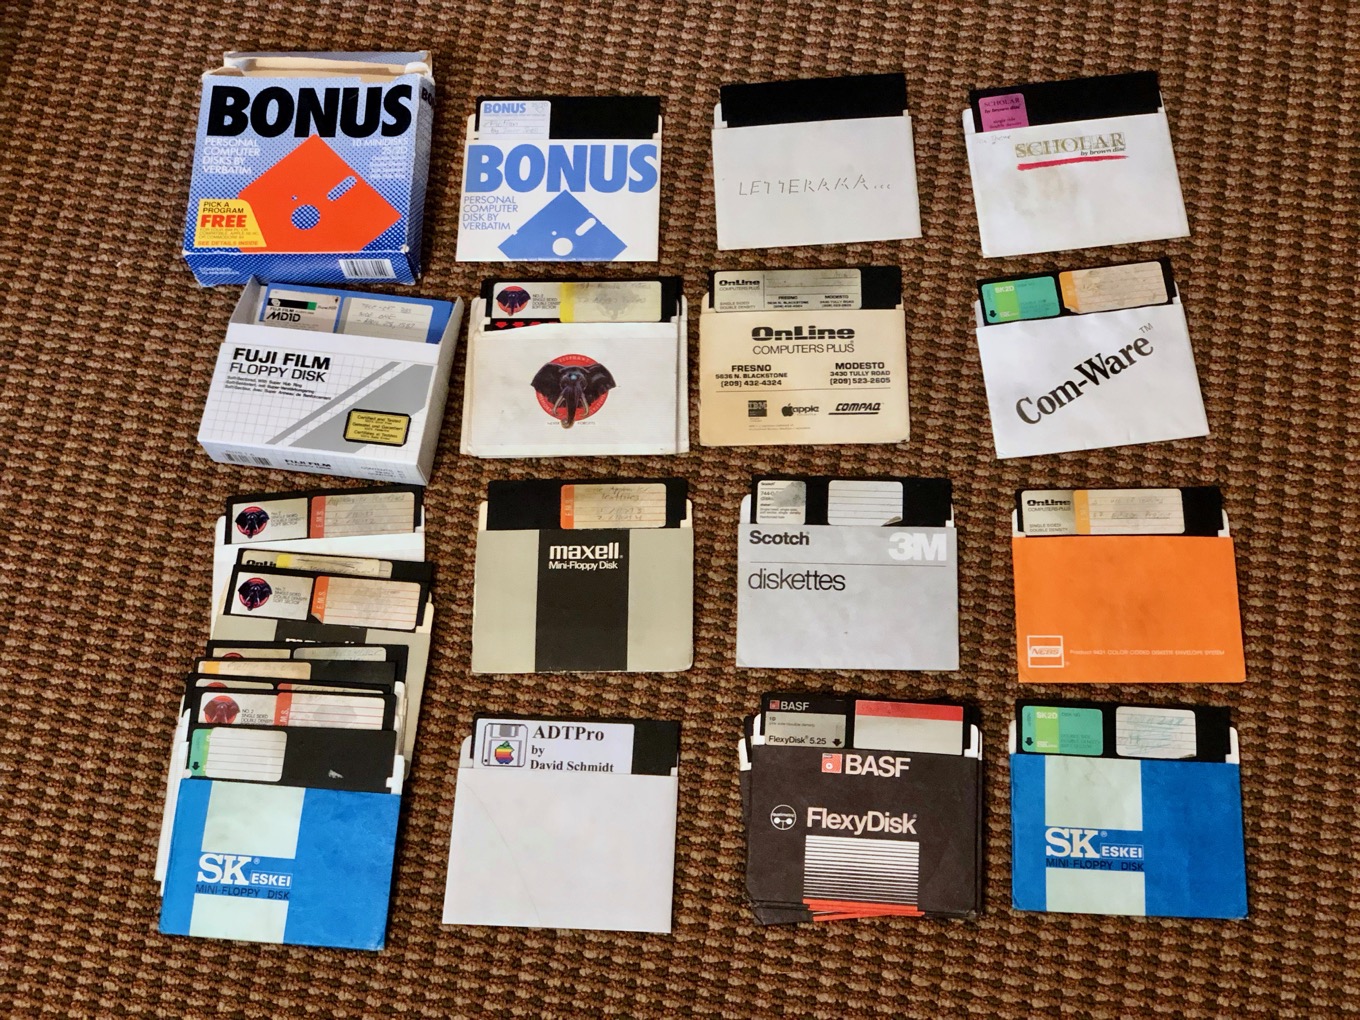 floppy disk emulator for mac